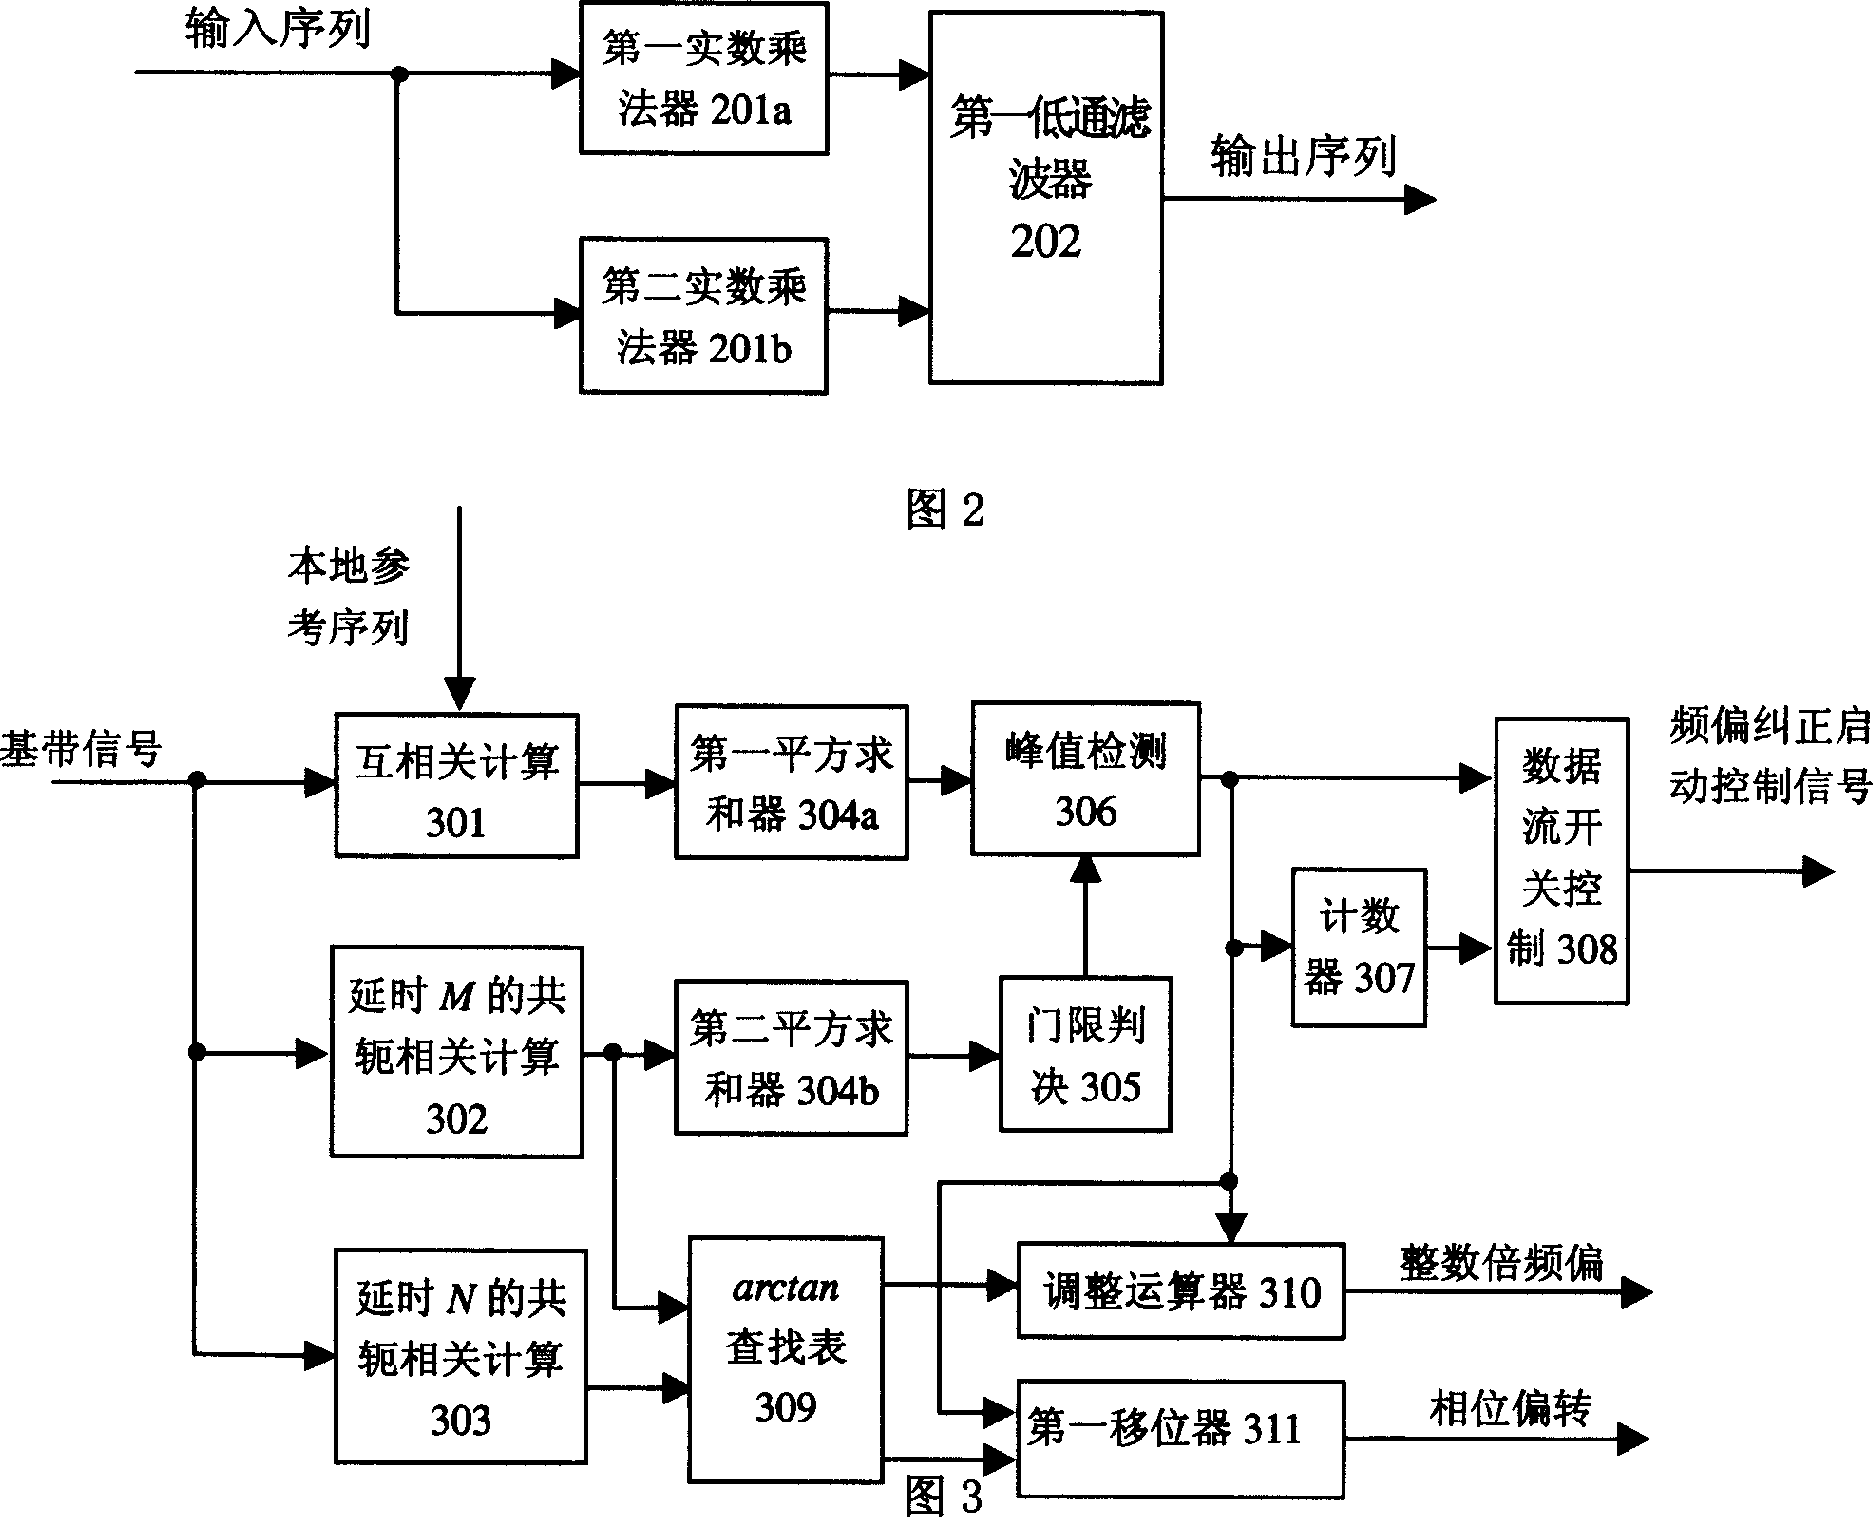 Quadrature frequency division complex digita receiver